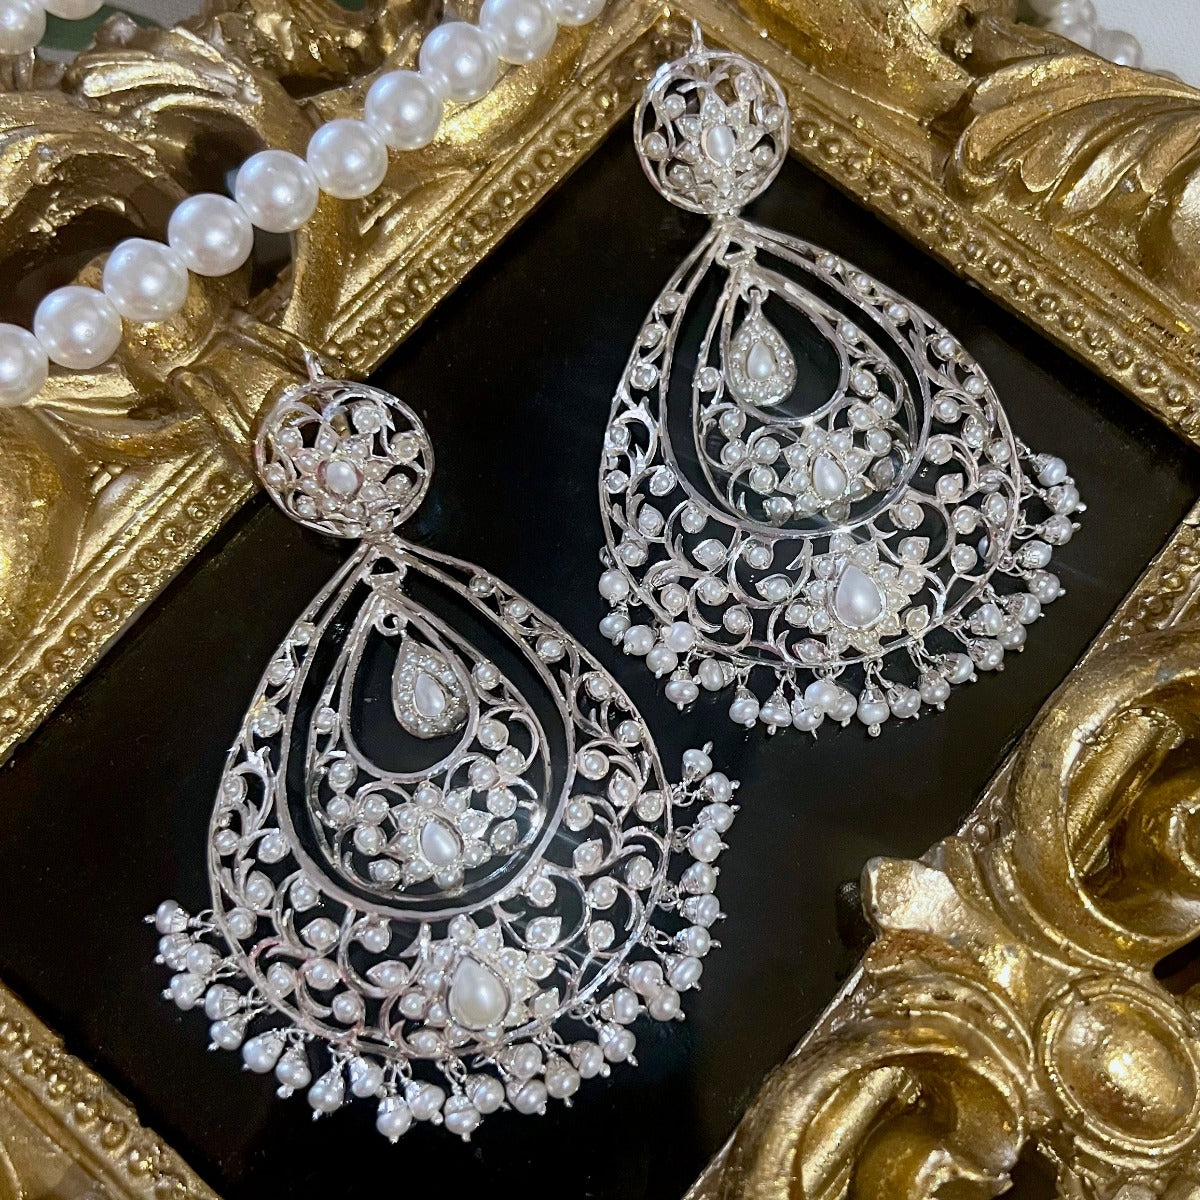 statement silver earrings